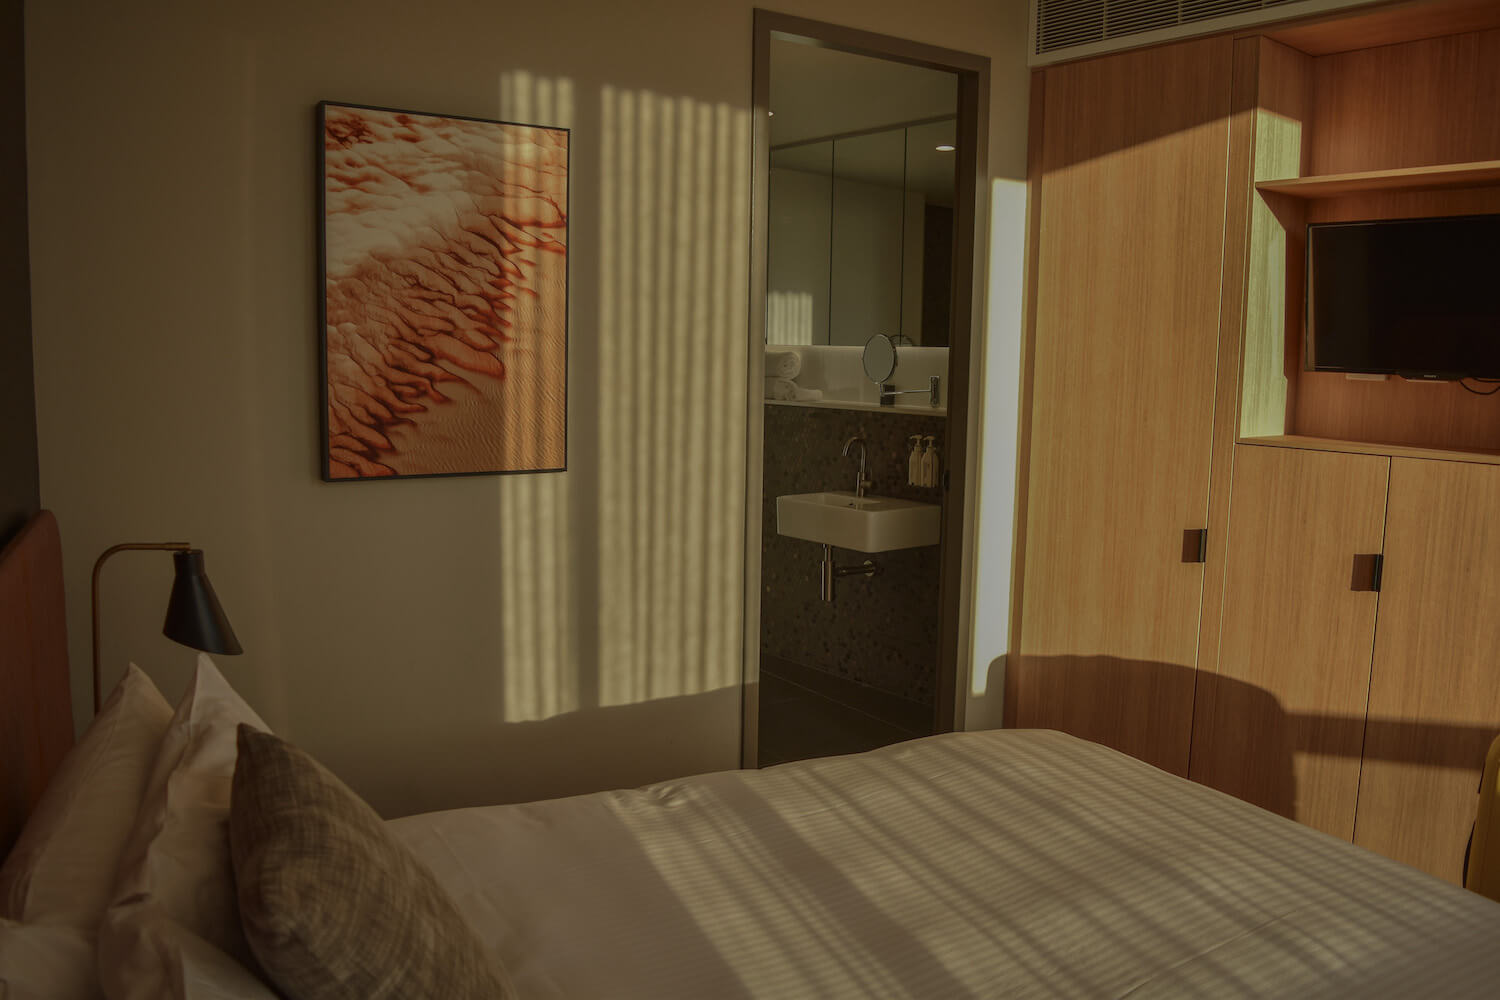 A bedroom looking into an en suite